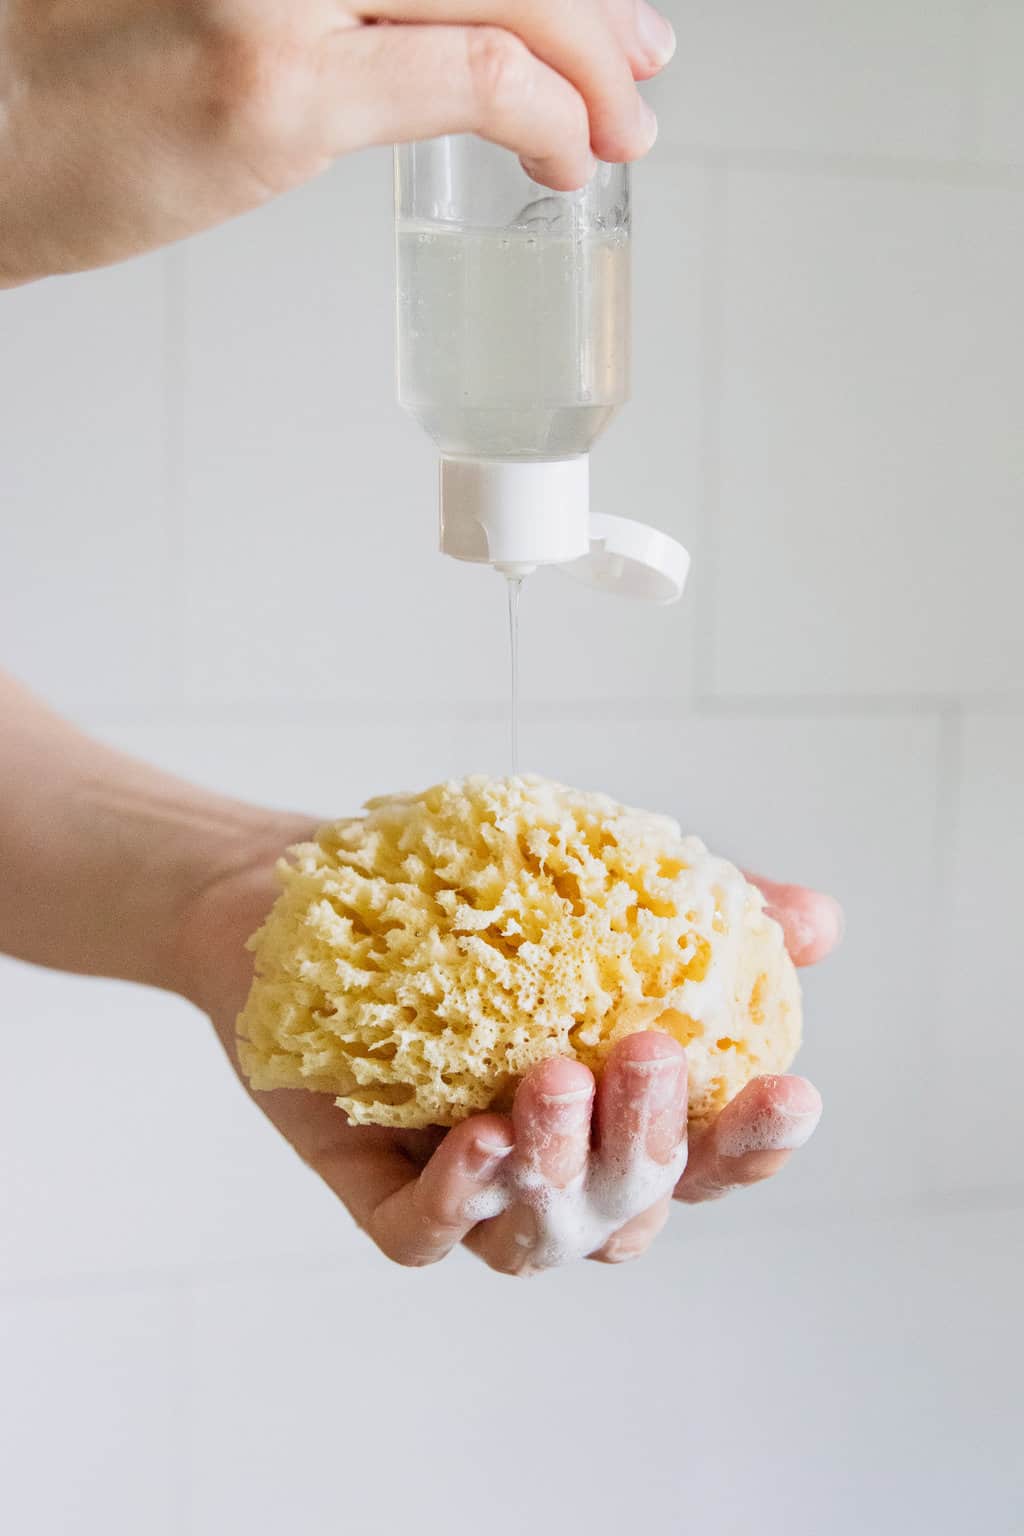 طريقة عمل صابون سائل للاستحمام 